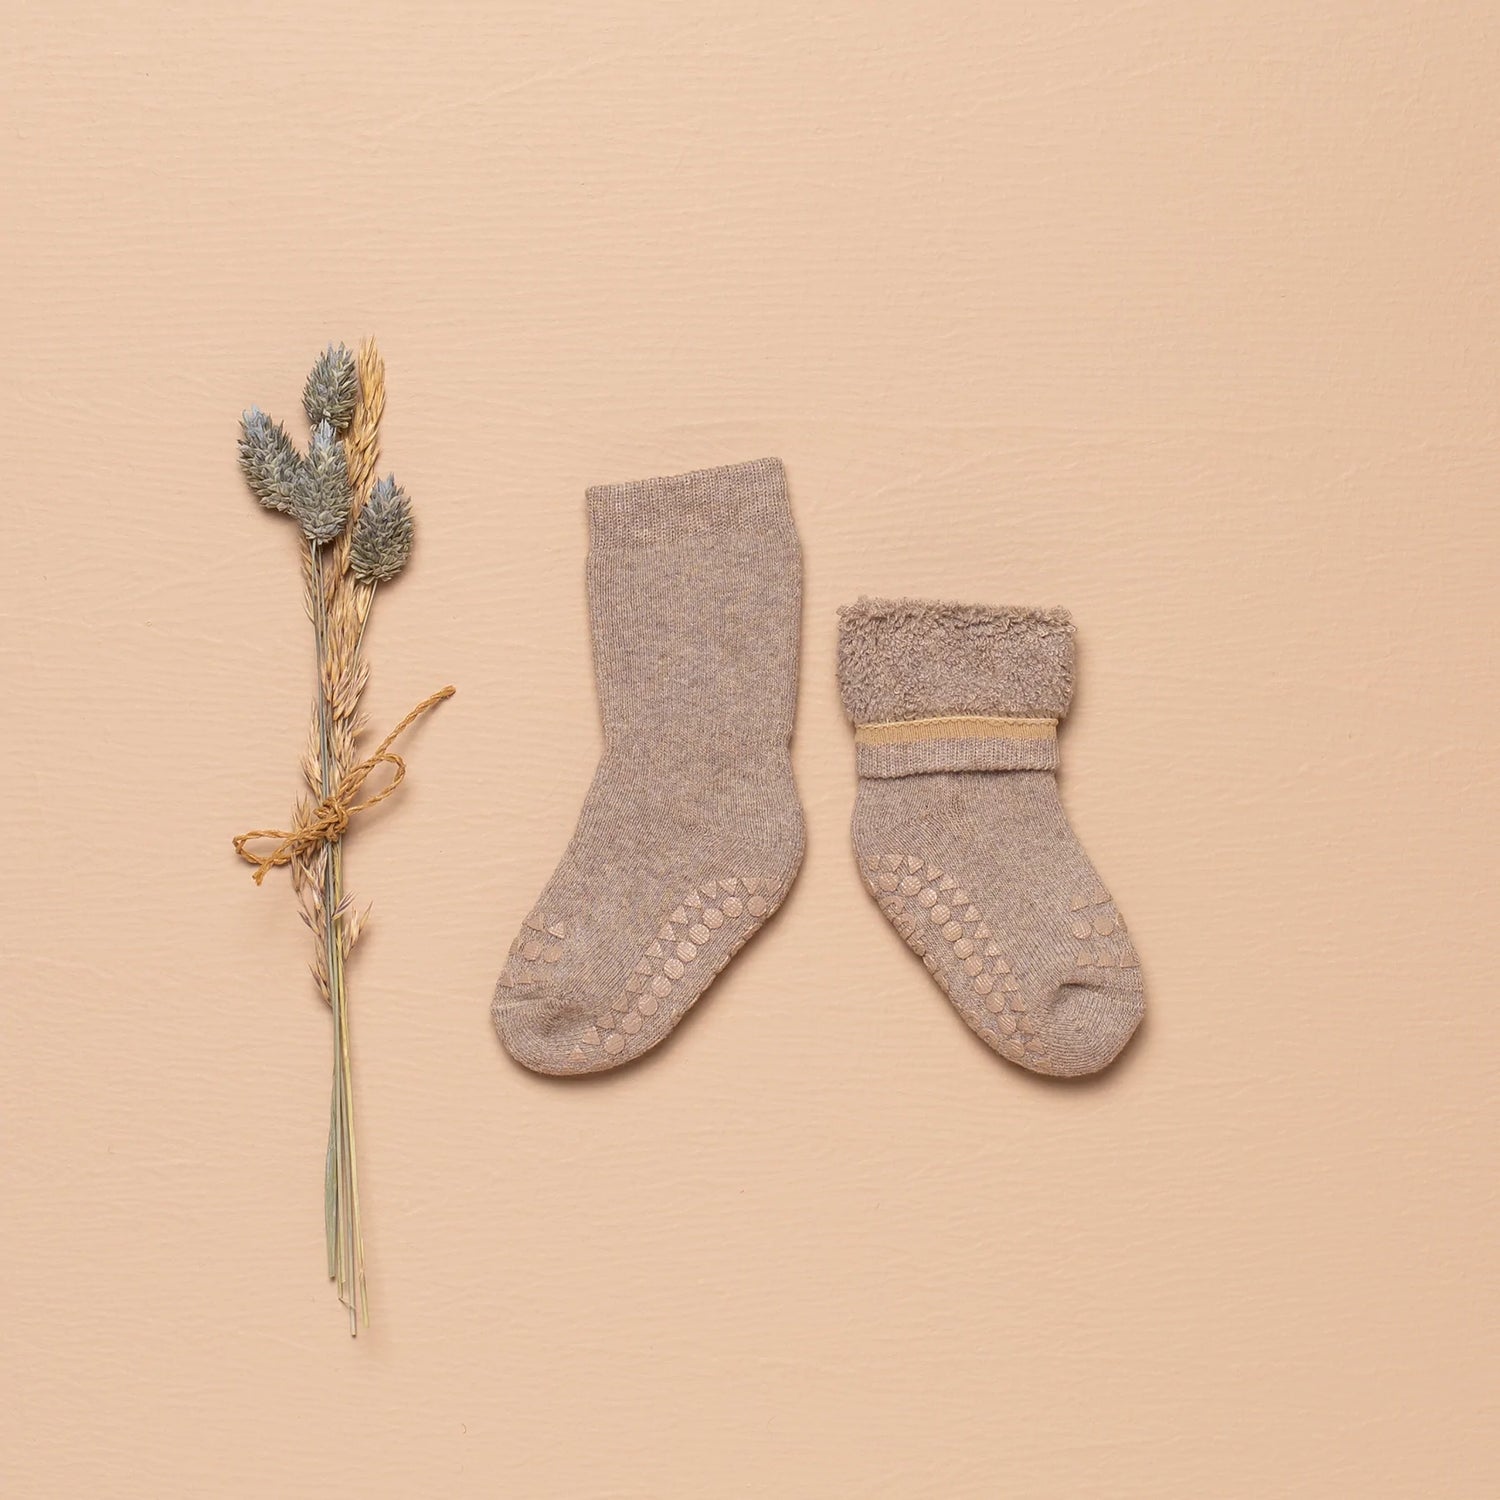 Antirutsch-Socken 'Dusty Rose' - The Little One • Family.Concept.Store. 